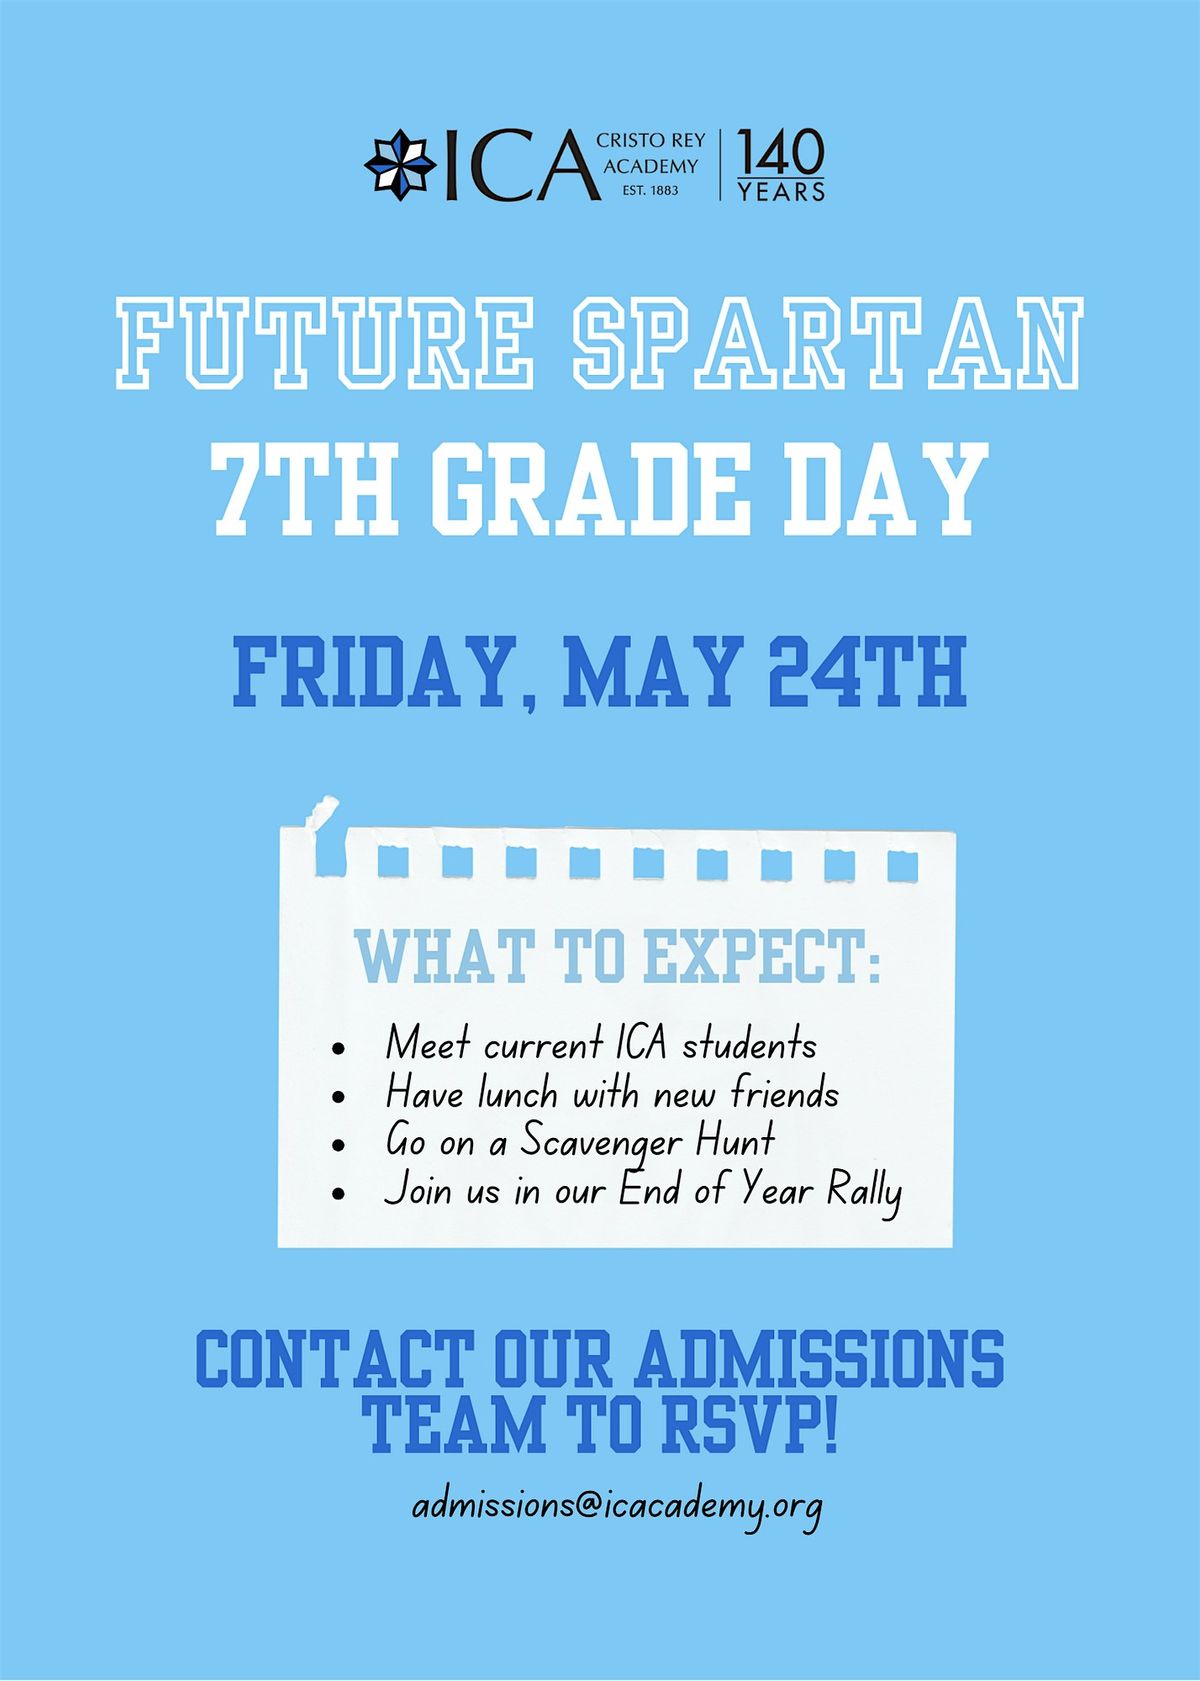 Future Spartan 7th Grade Day